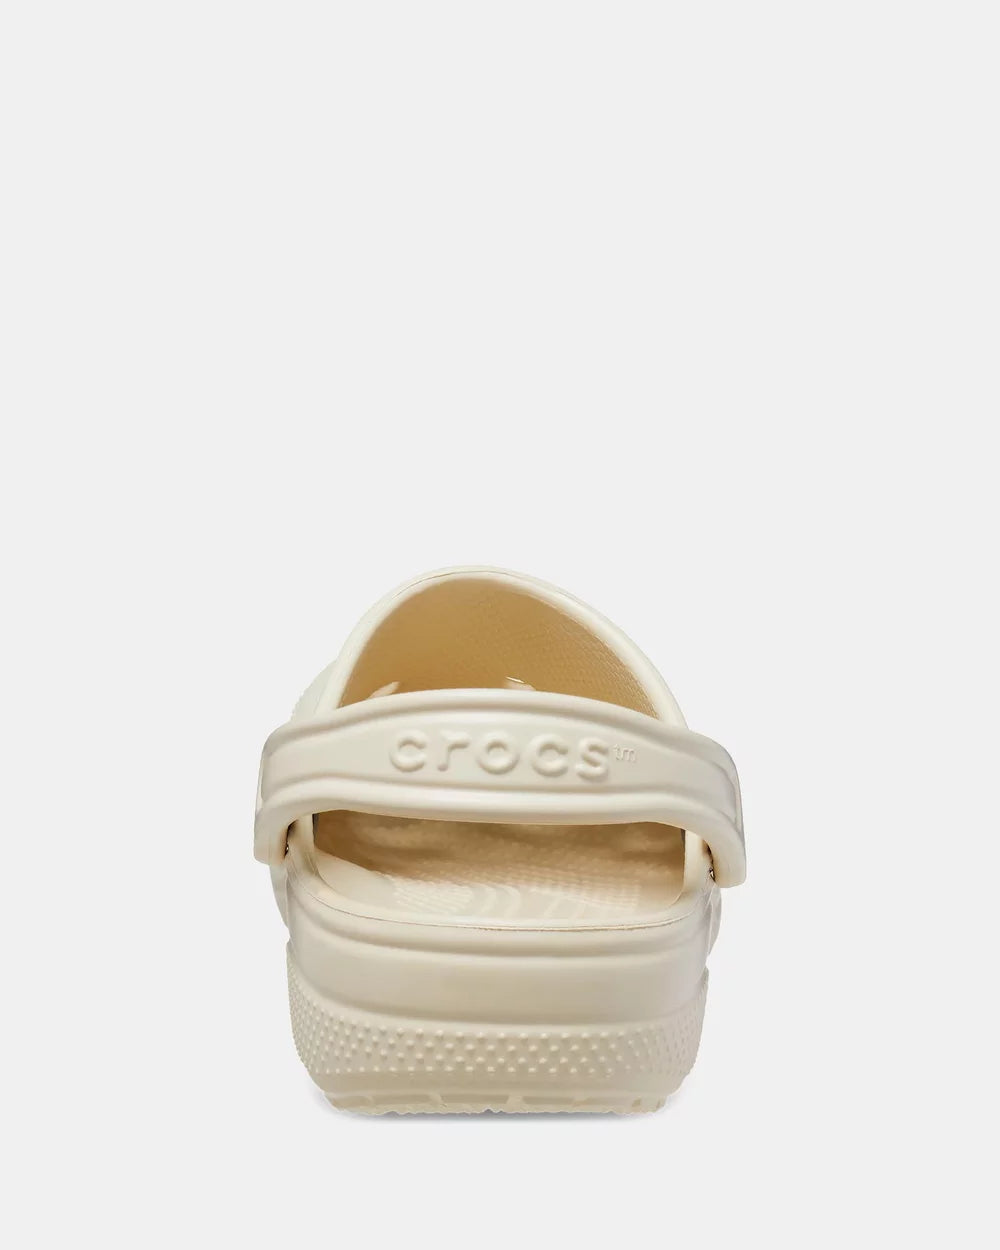 Crocs Bone Waterproof Shoes Comfy 